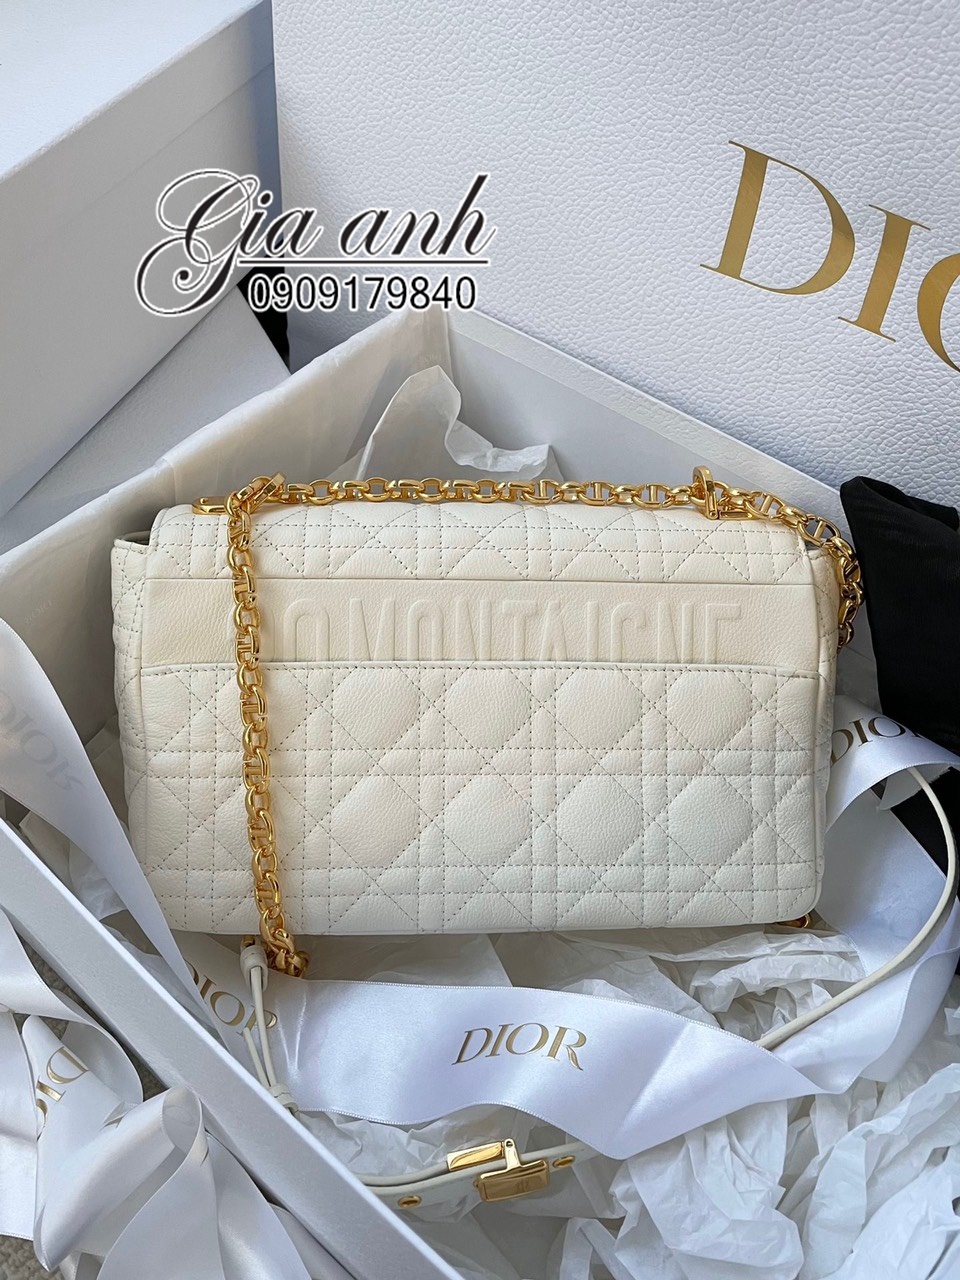 Túi xách Dior cao cấp sang trọng bán chạy Cập nhật tháng 7